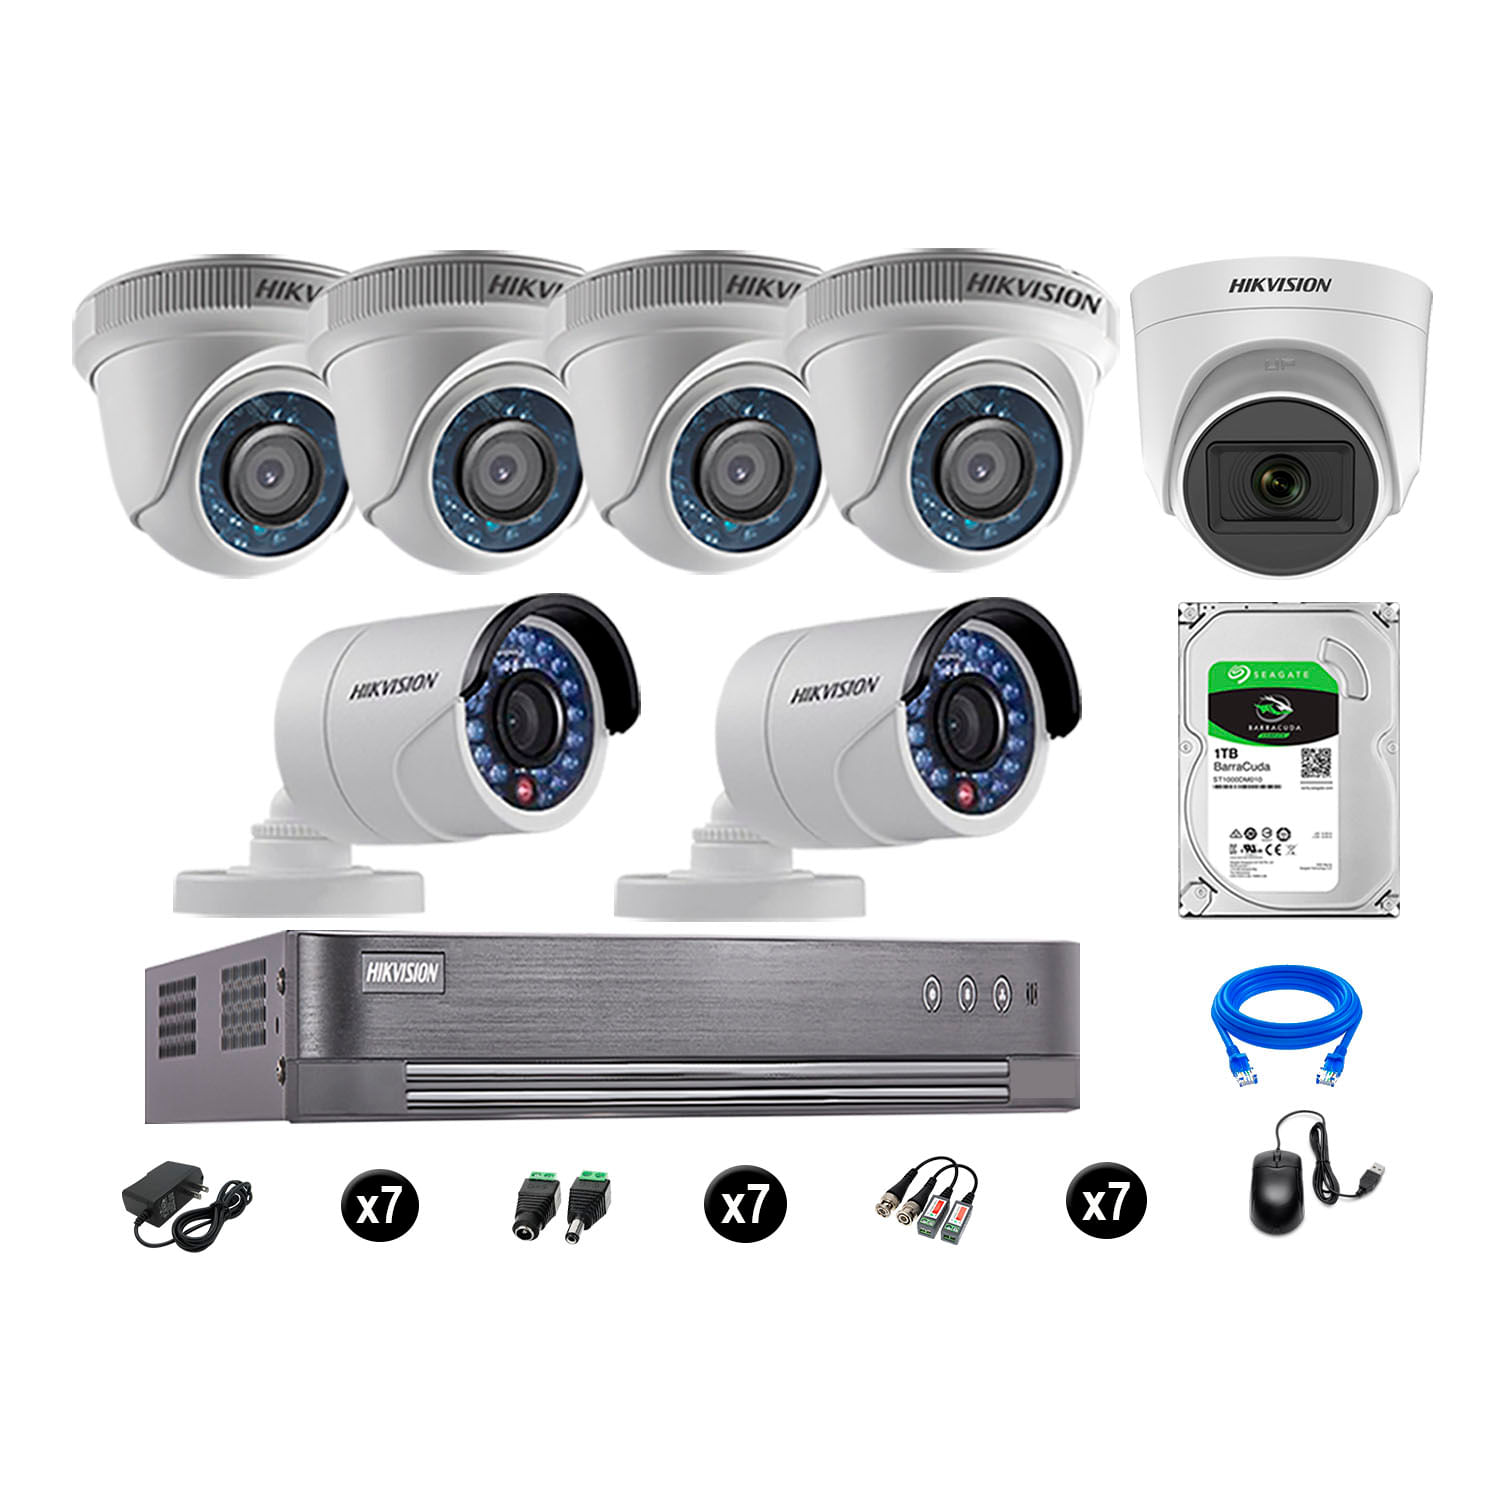 Cámaras de Seguridad Hikvision Kit 7 Vigilancia Hd 720P 1Tb 1 Cámara con Audio